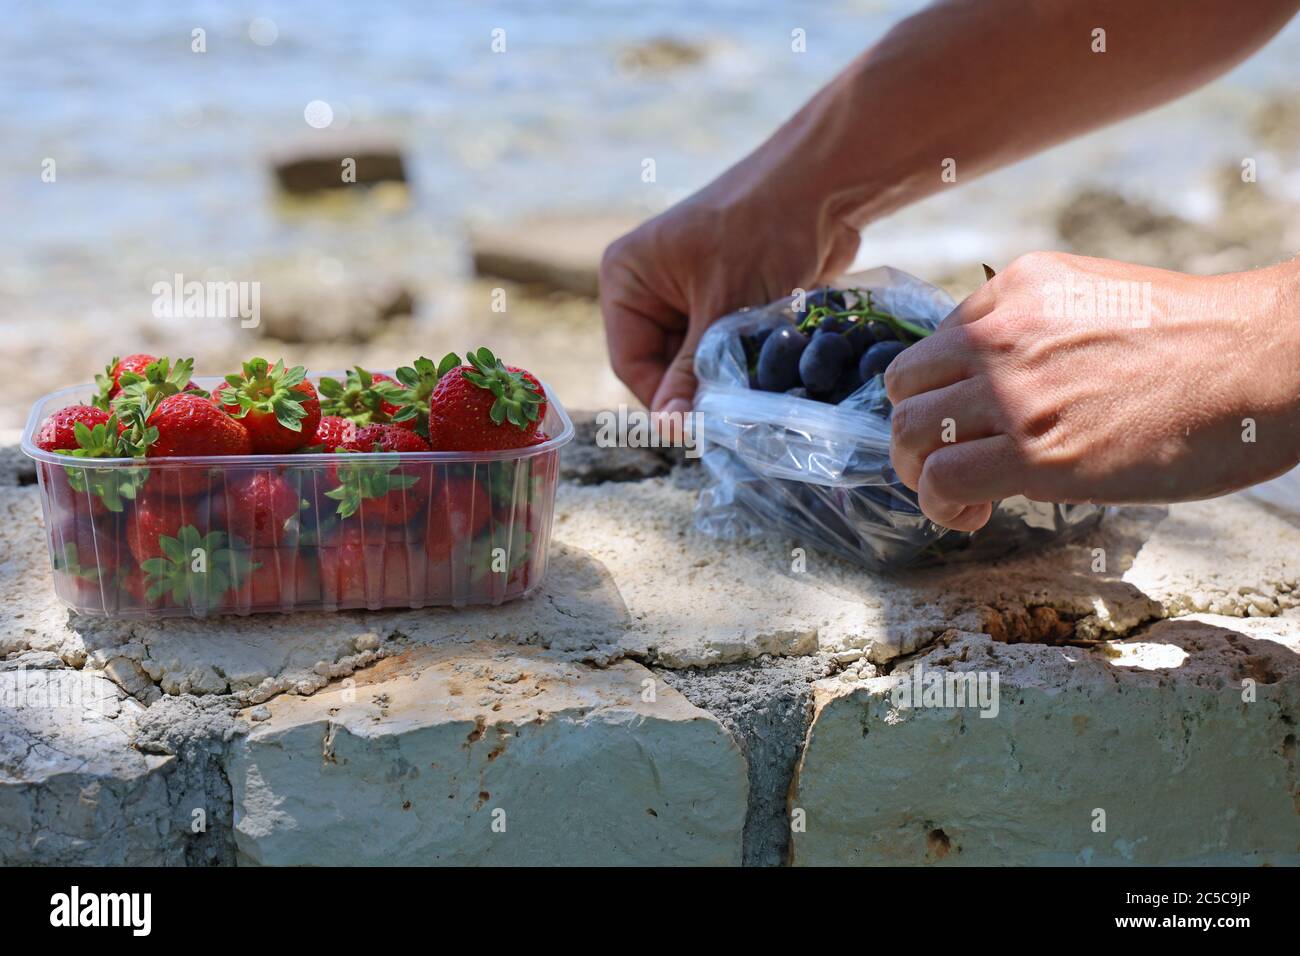 Saftige und reife Früchte an der Steinwand vor dem Meer, gesunde Ernährung am Strand, Nahaufnahme von männlichen Händen beim Auspacken von Trauben und Erdbeeren Stockfoto